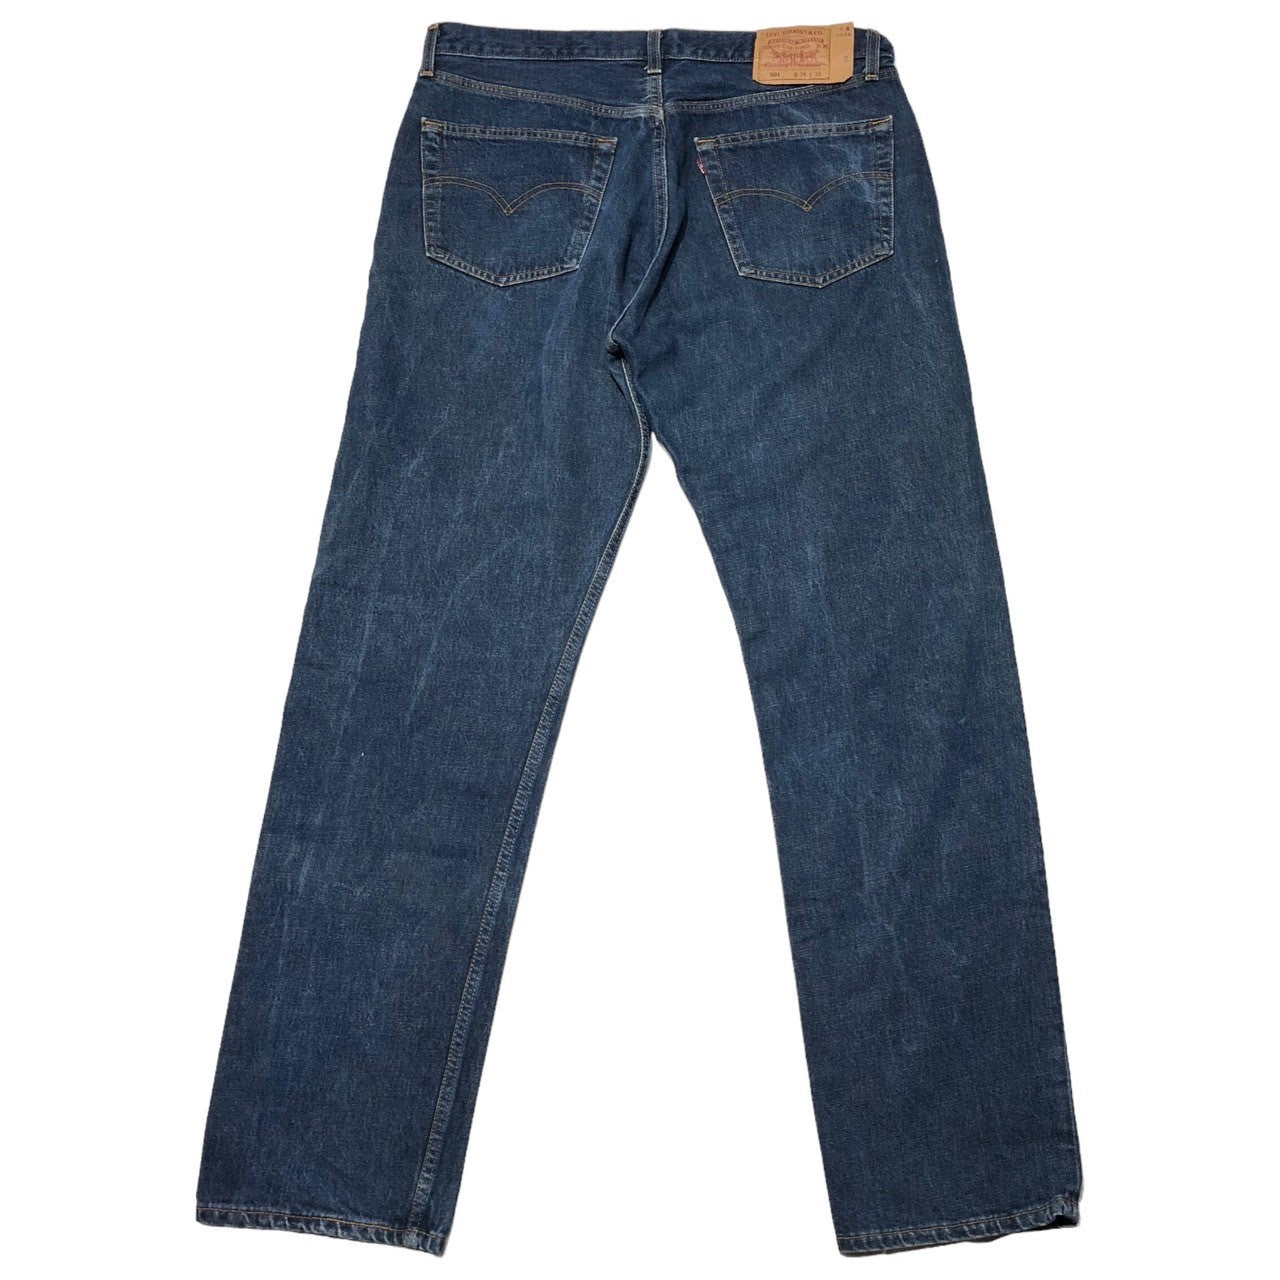 Levi's(リーバイス) 90's 501 straight denim pants ストレート デニム パンツ 501-0169 W38/L34 インディゴ USA製 1999年製造 90年代 ヴィンテージ